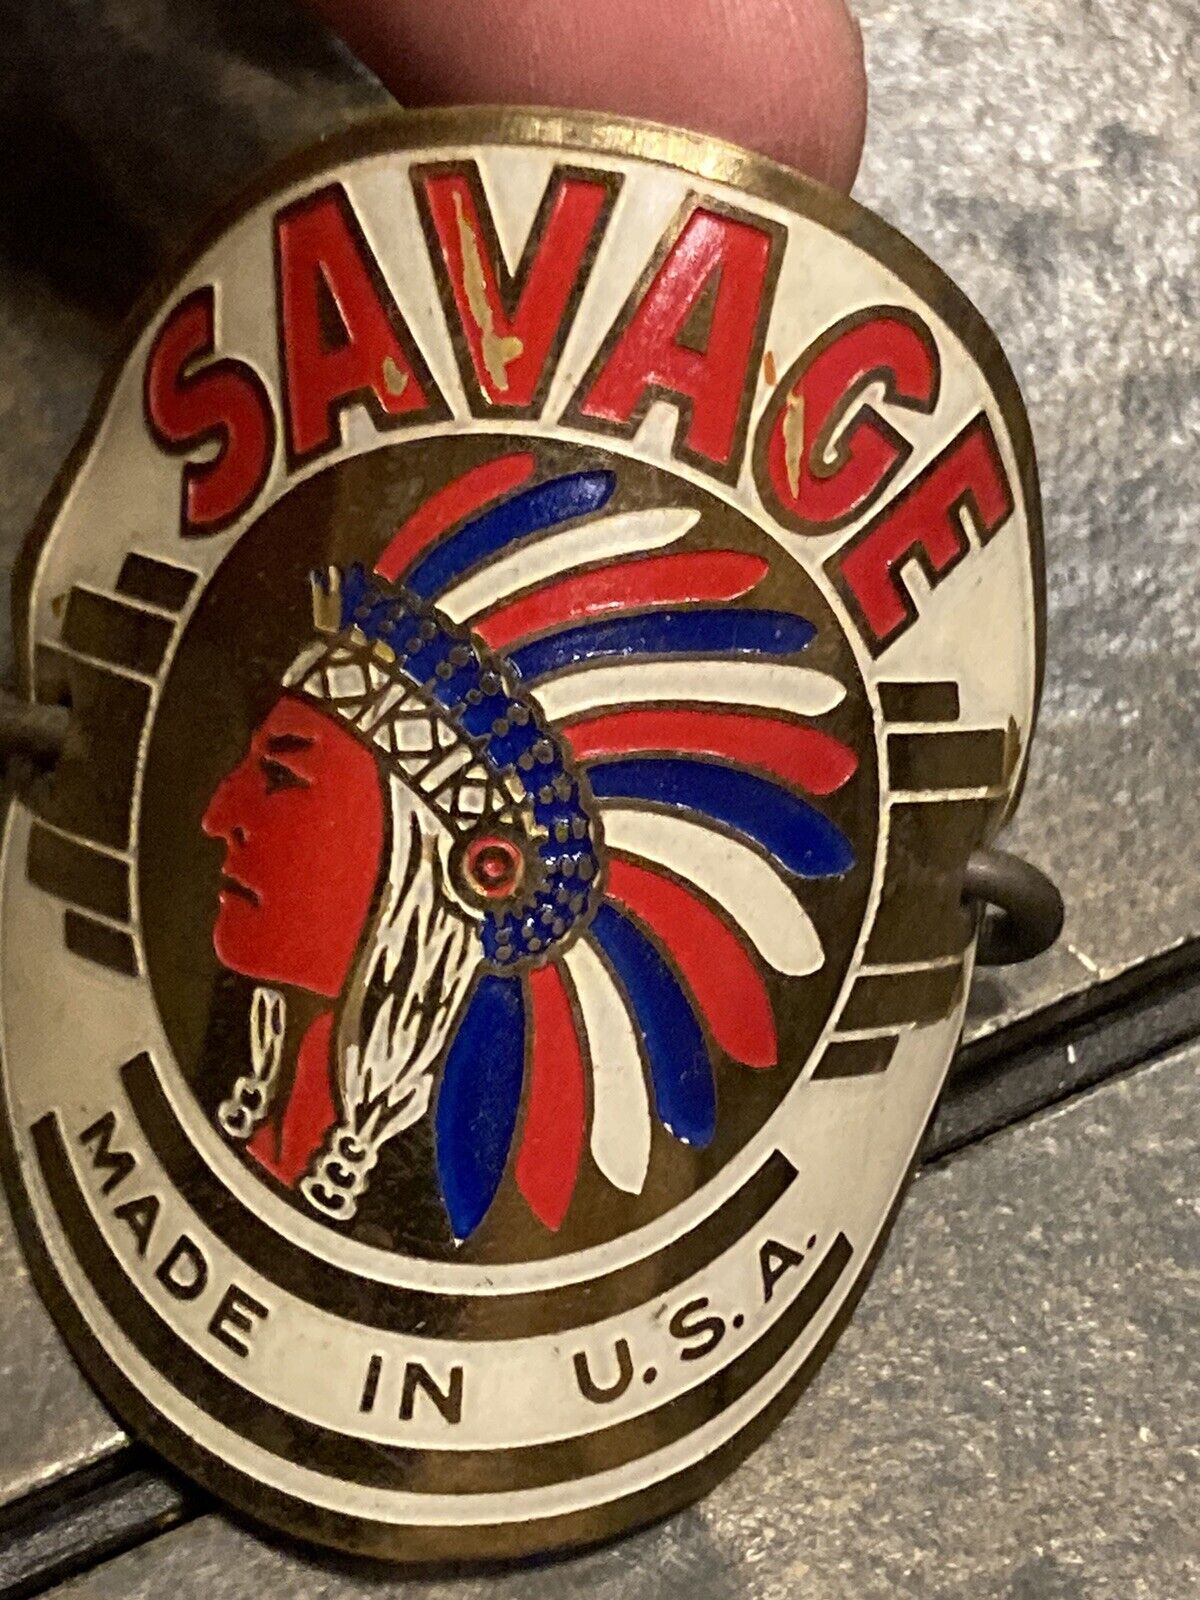 Savage Vintage Bicycle Badge 